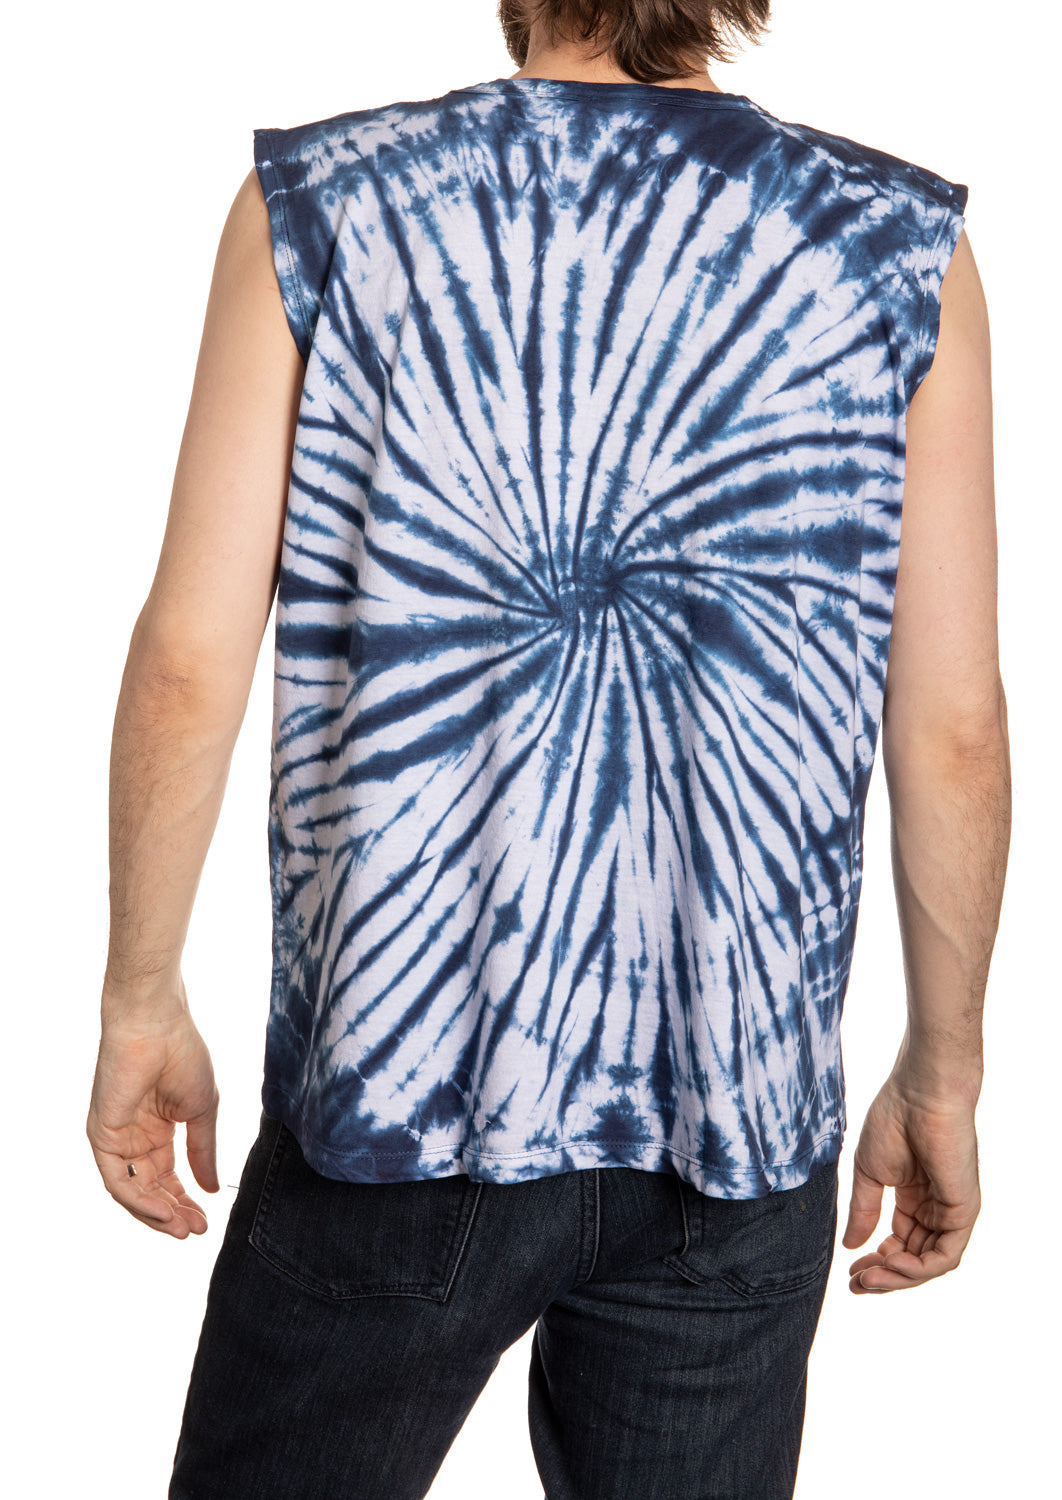 Seattle Kraken Spiral Tie Dye Sleeveless Shirt for Men